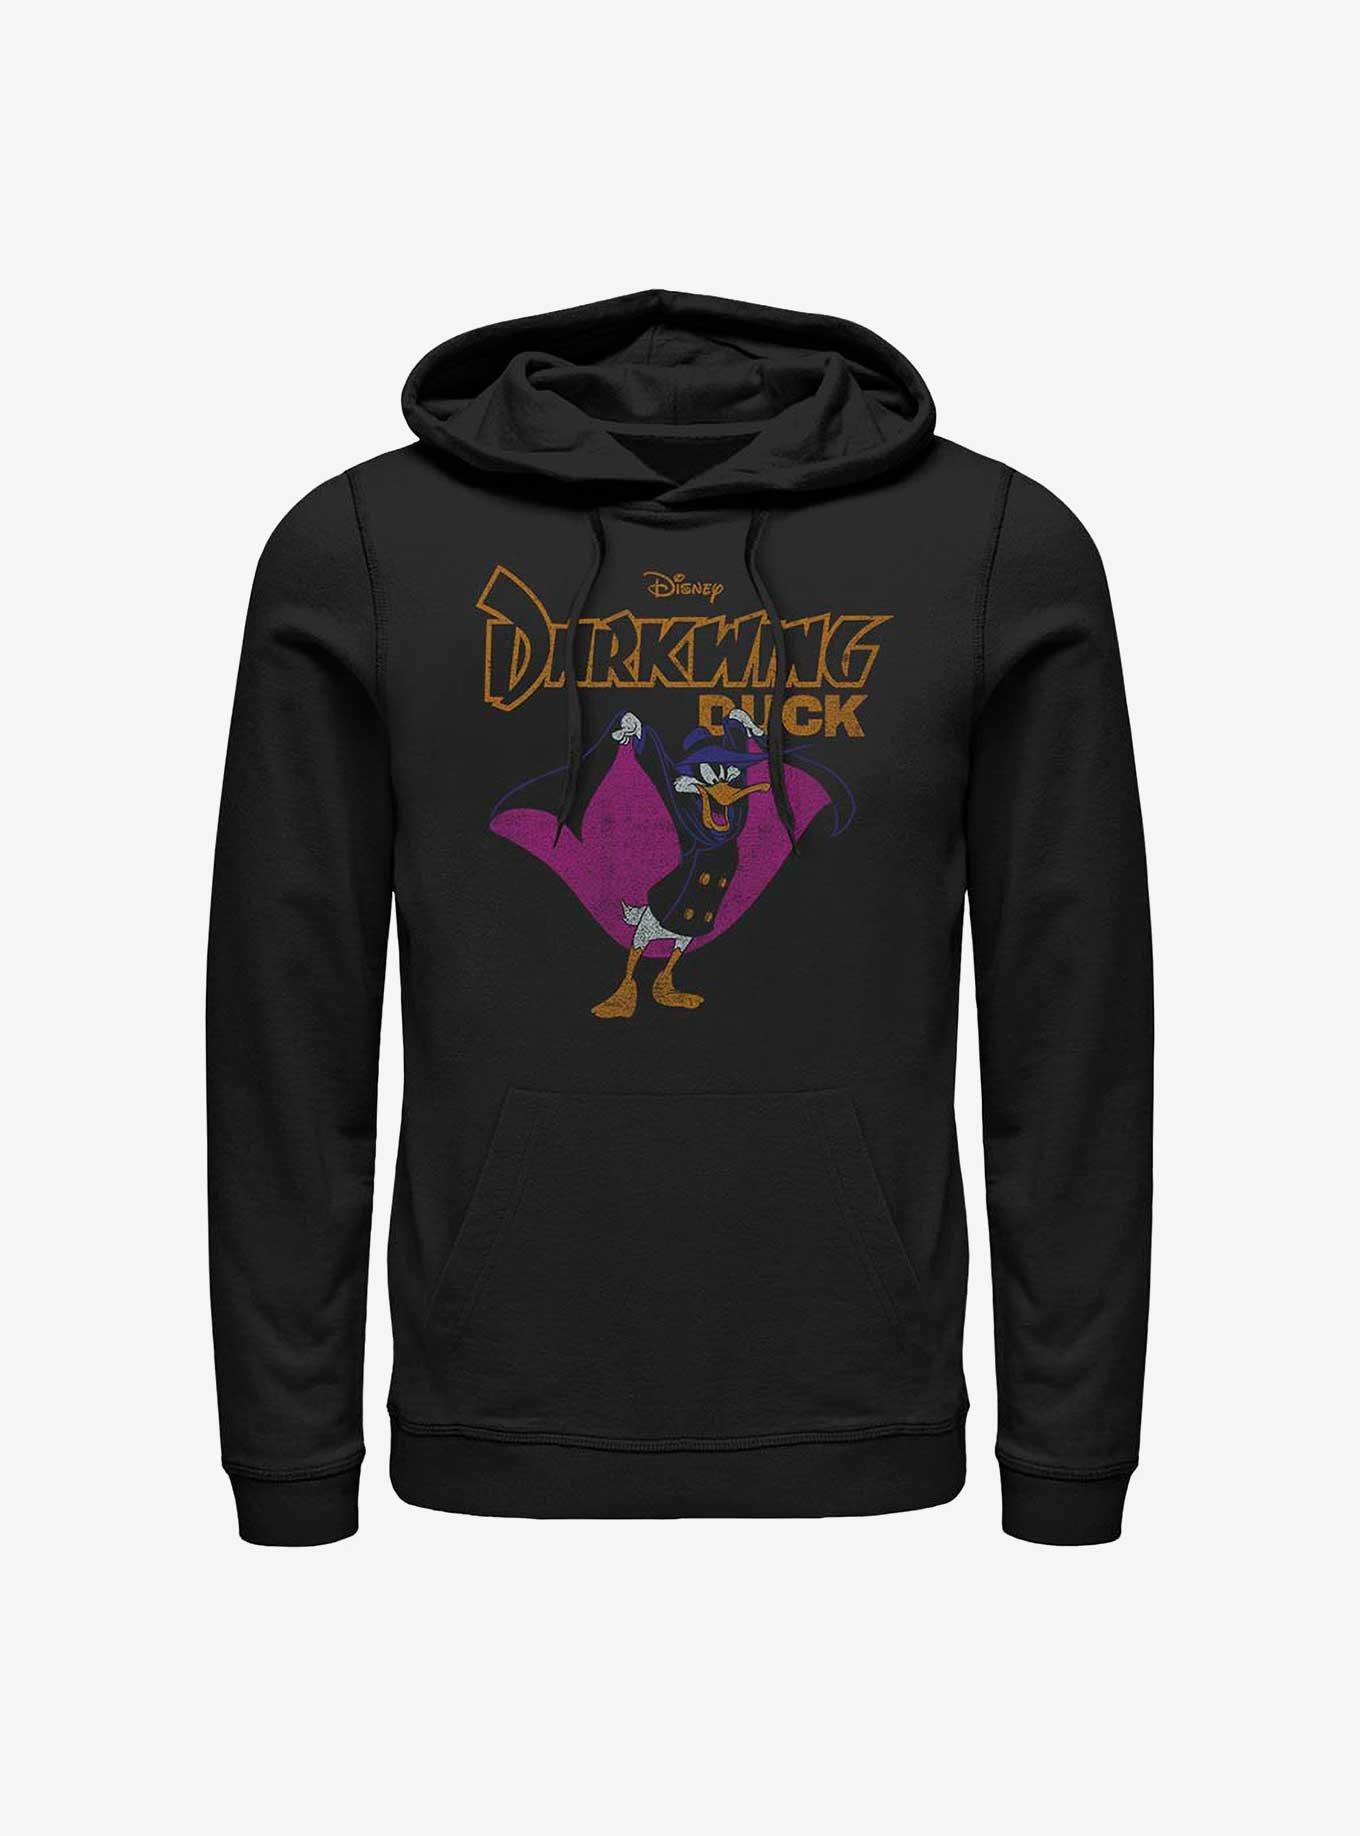 Disney Darkwing Duck The Dark Duck Hoodie, BLACK, hi-res